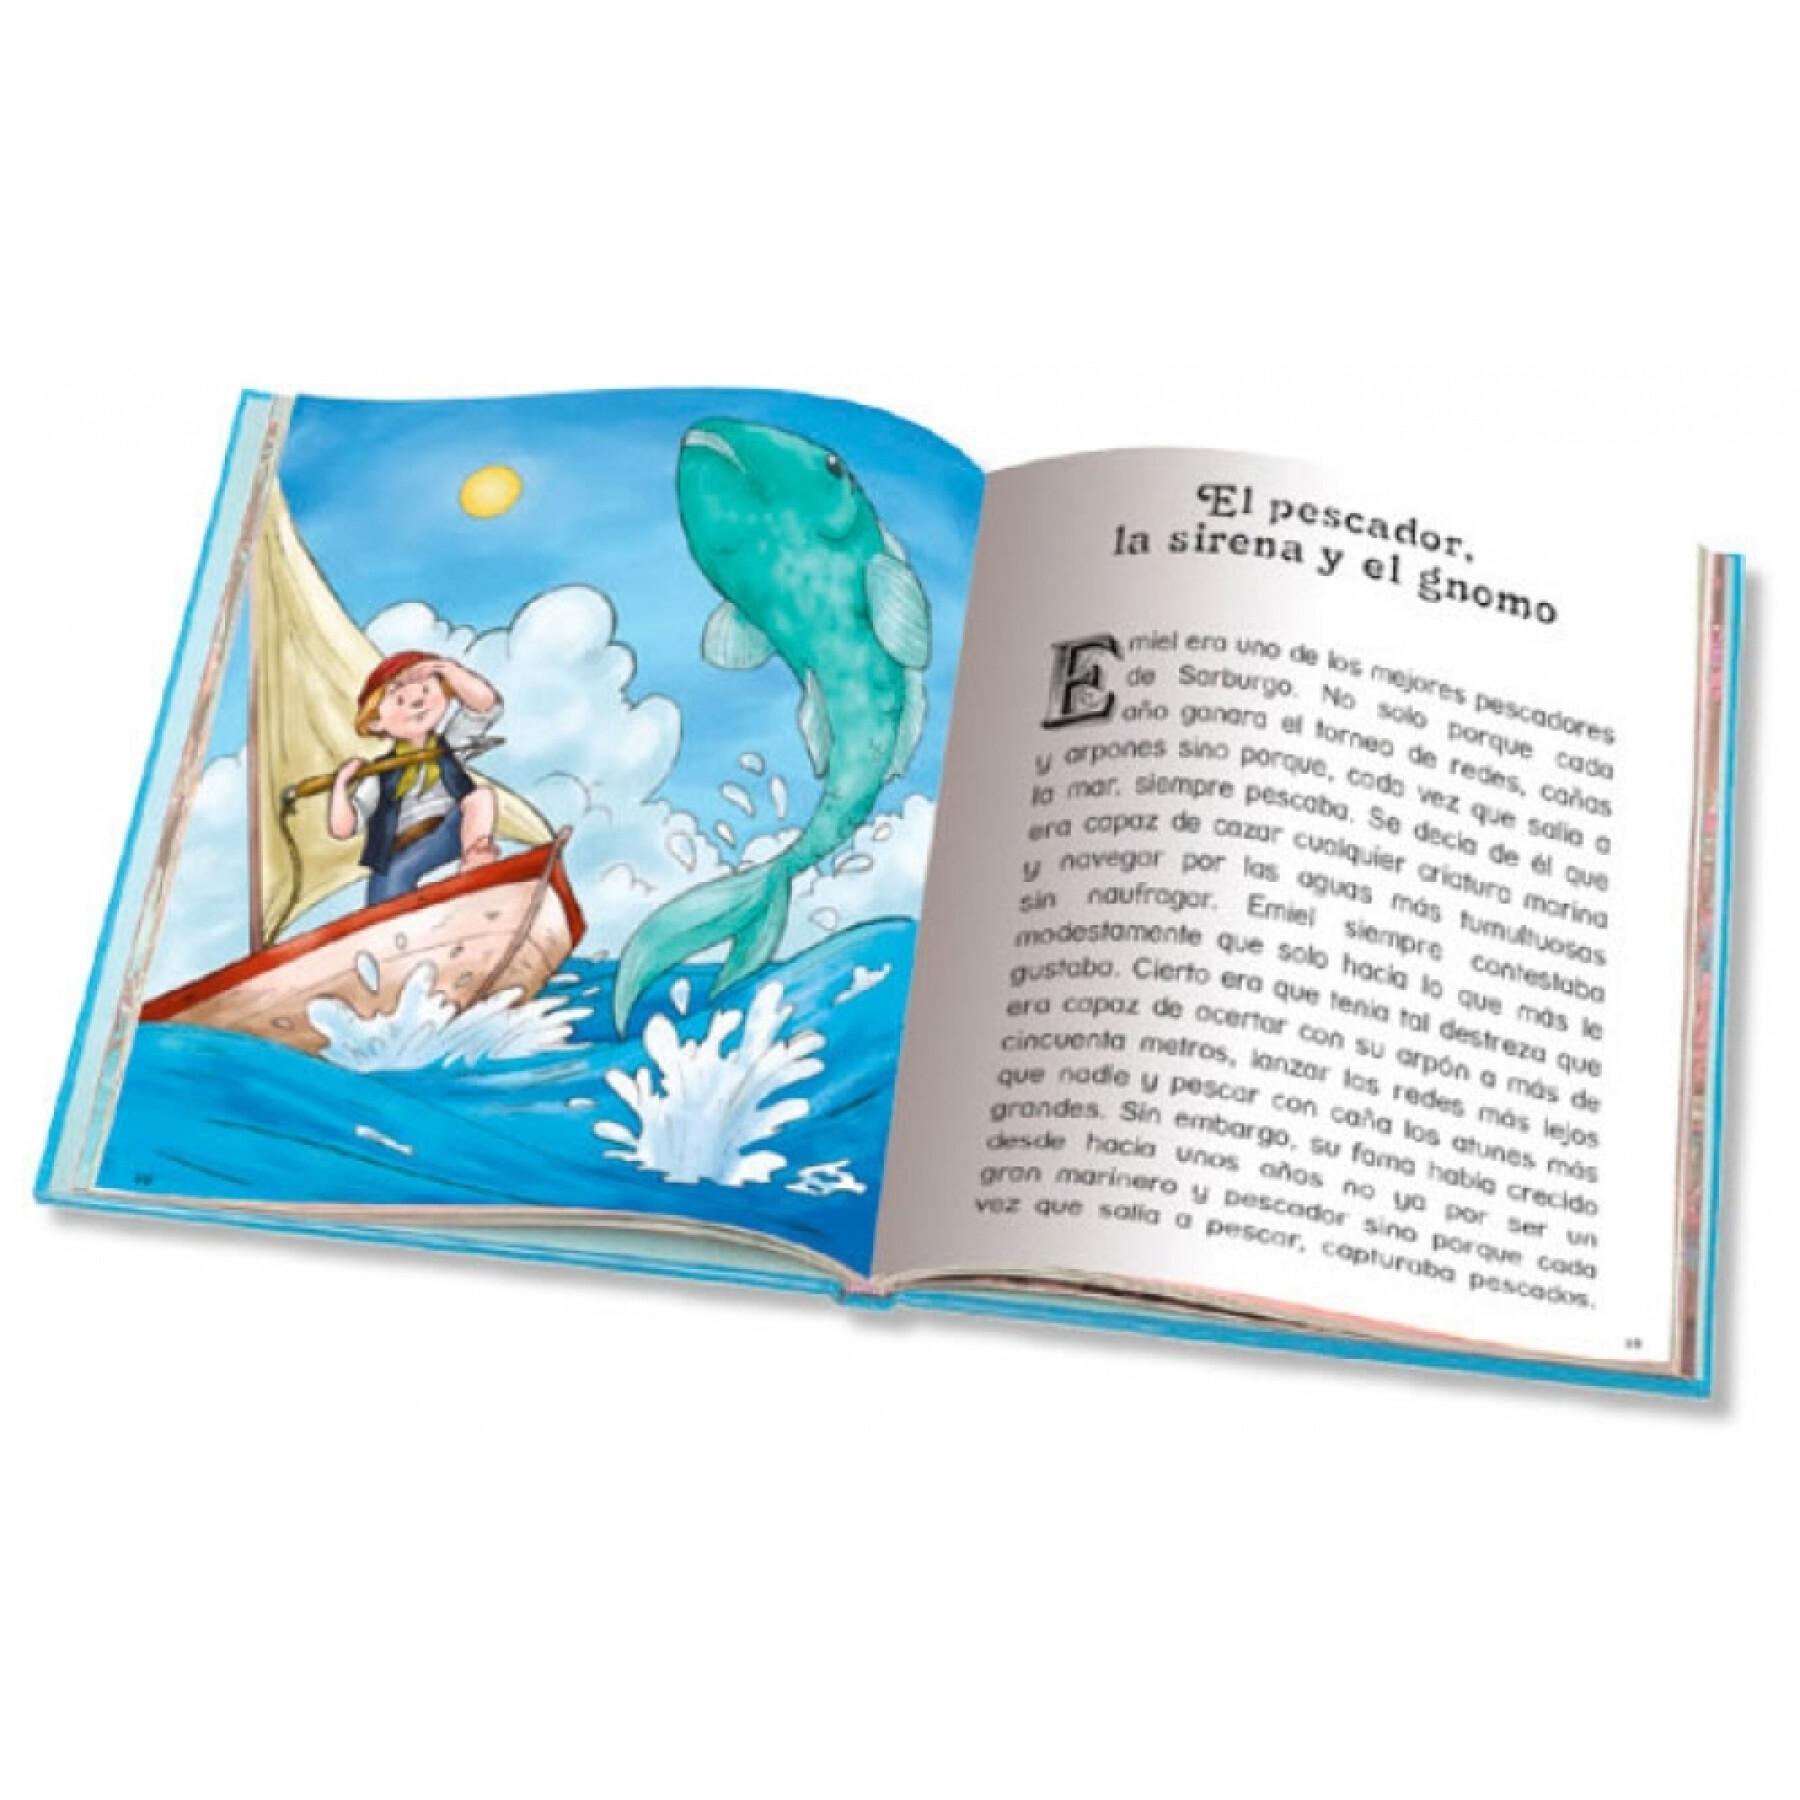 Storybook 280 pages adventures Ediciones Saldaña